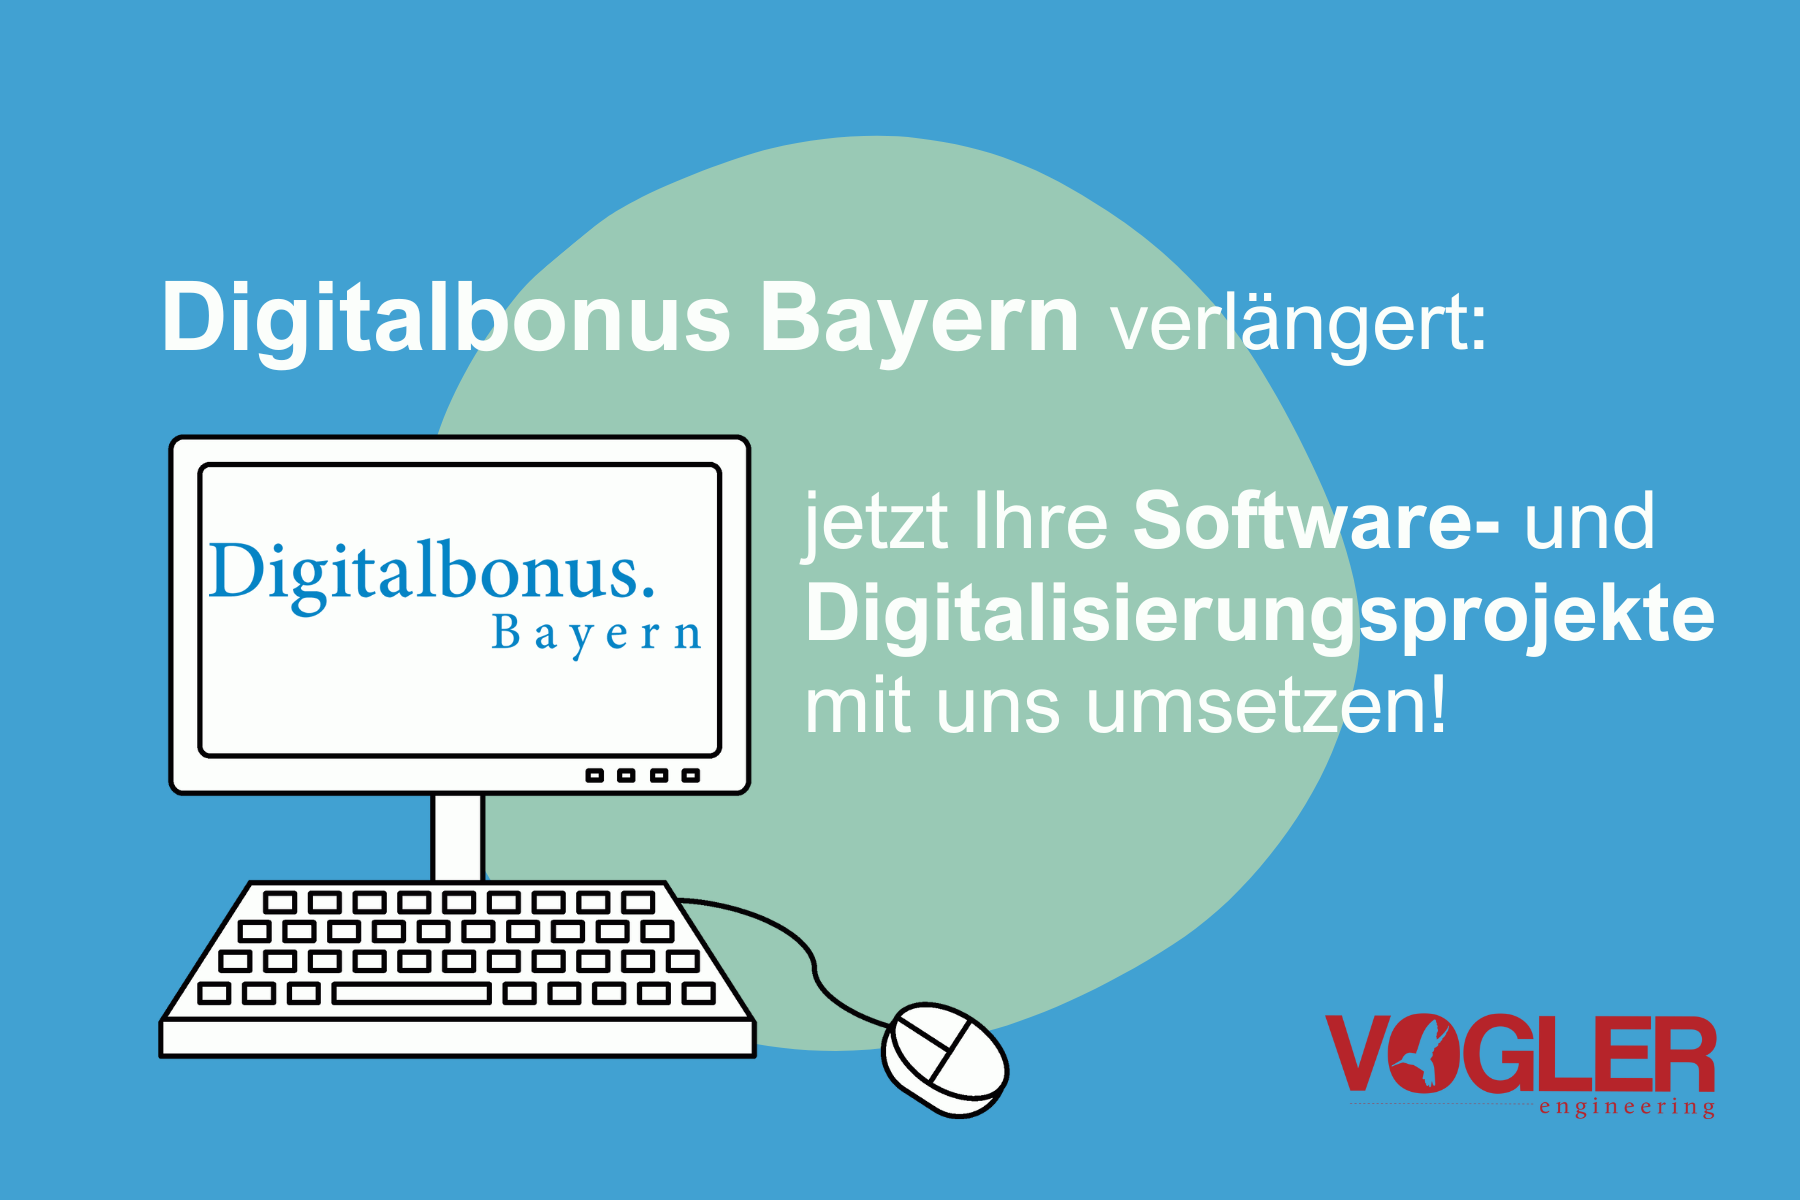 Digitalbonus Bayern verlängert